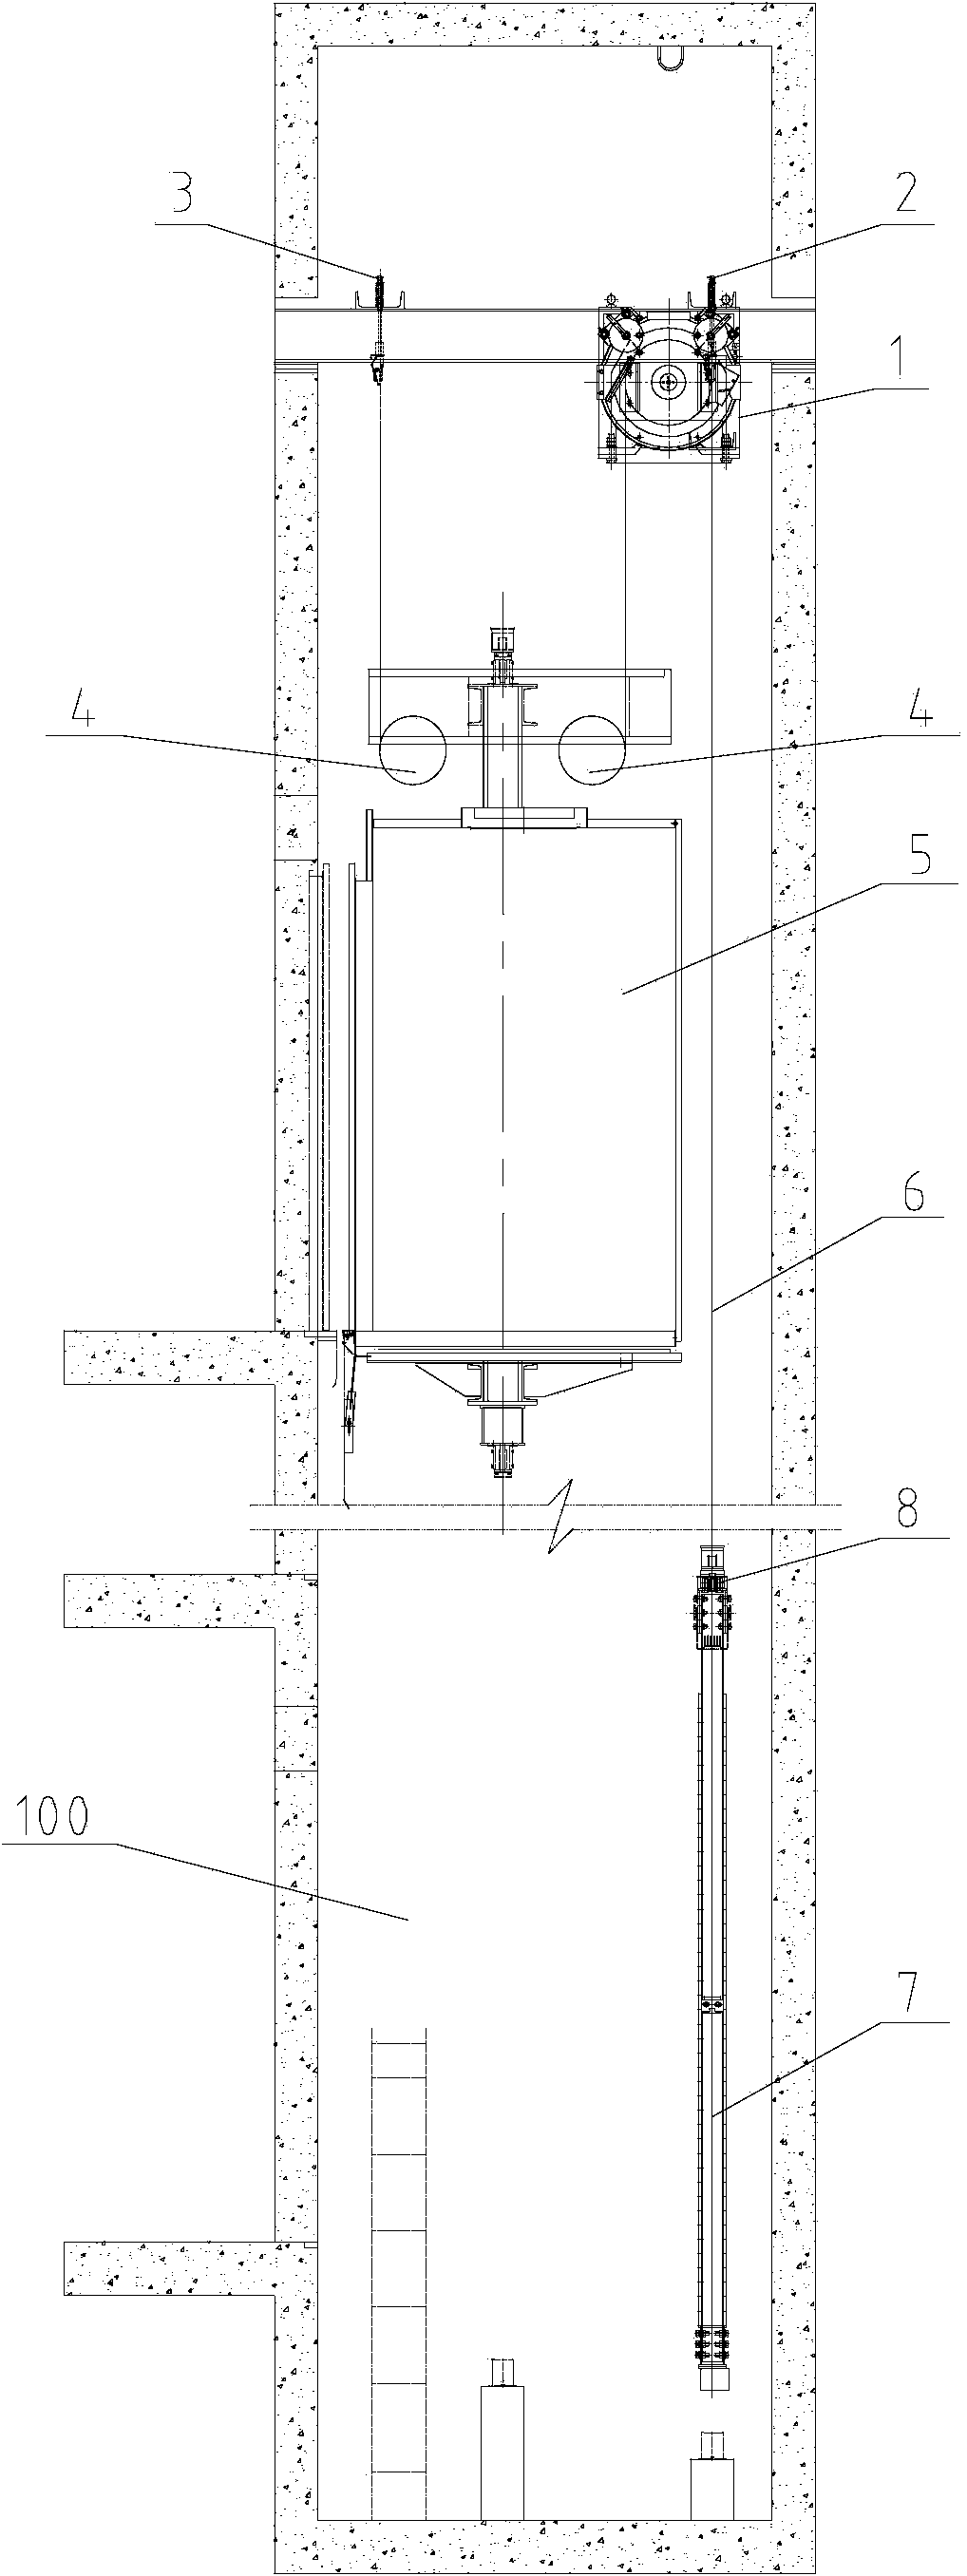 Machine-room-free elevator arrangement structure